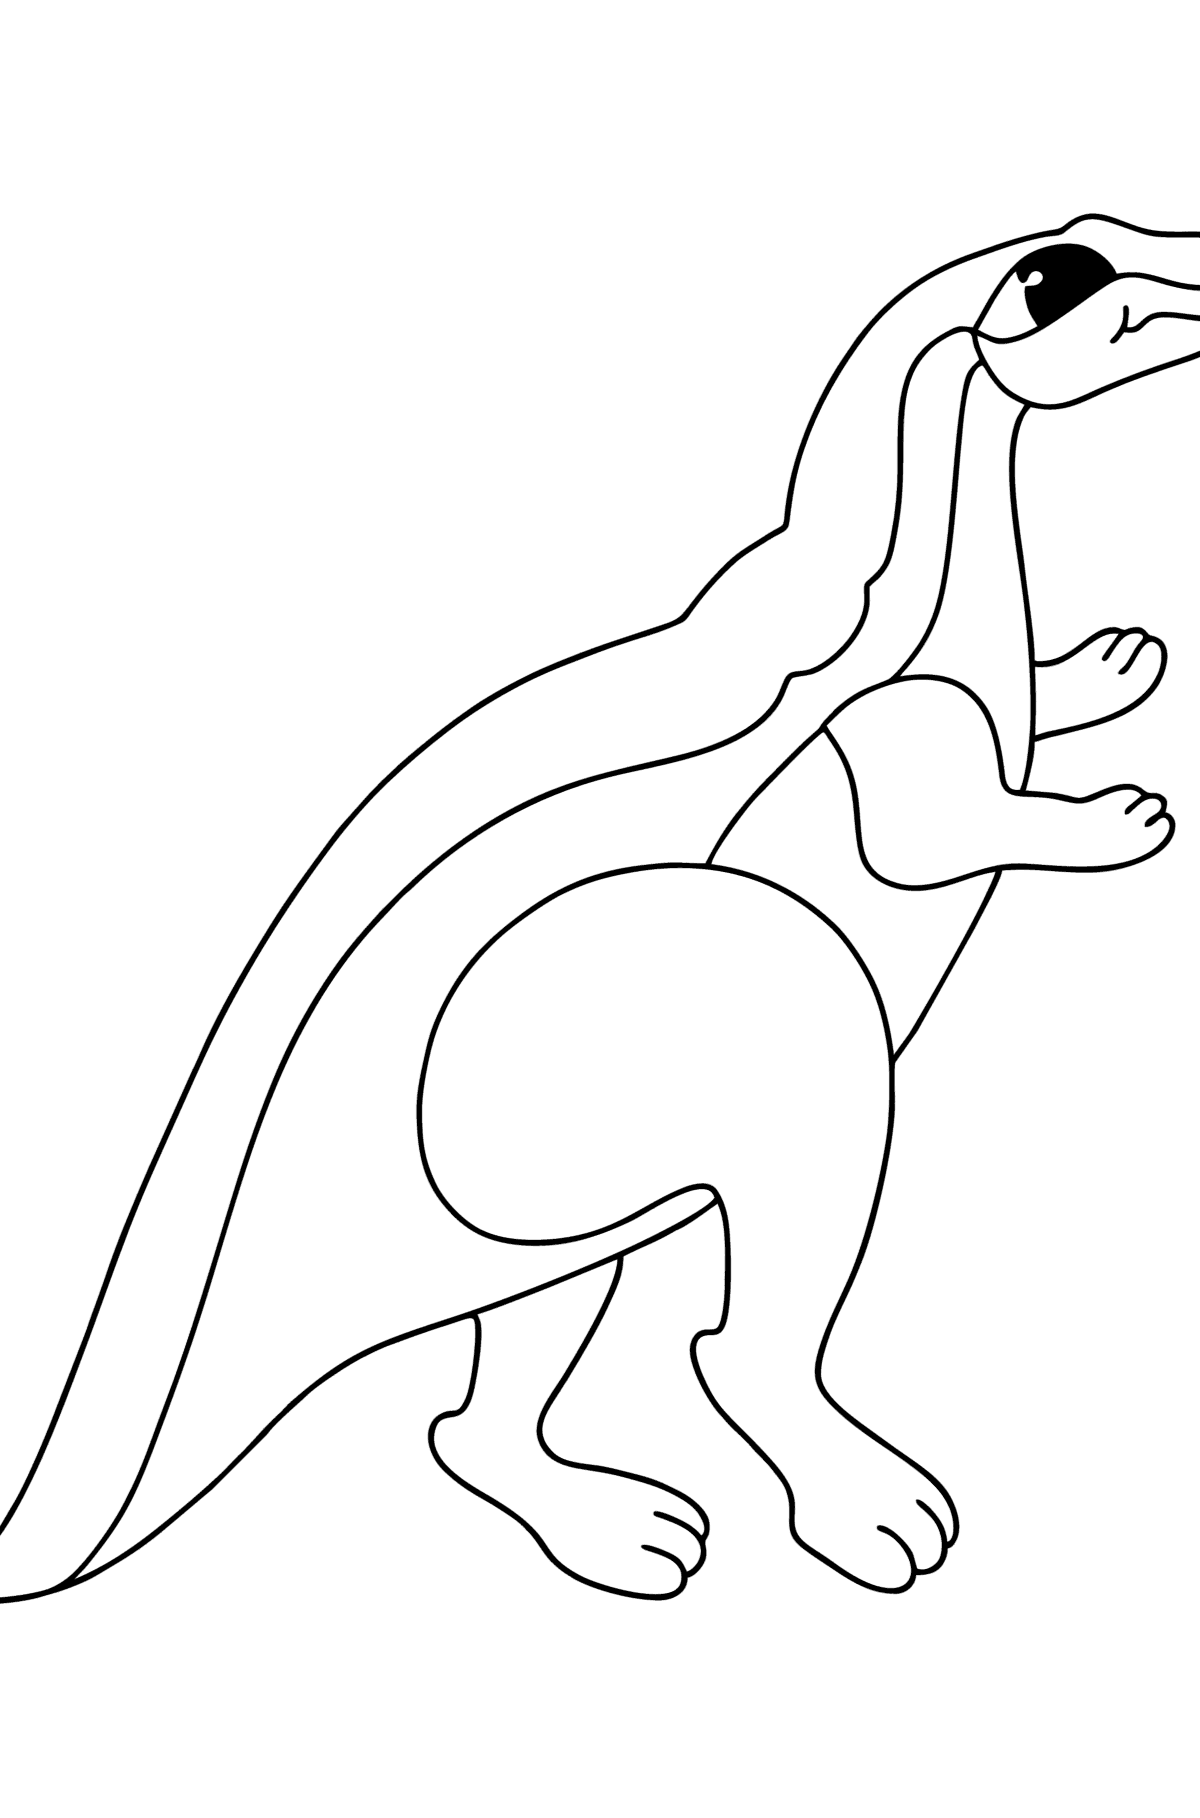 Boyama sayfası agilisaurus - Boyamalar çocuklar için